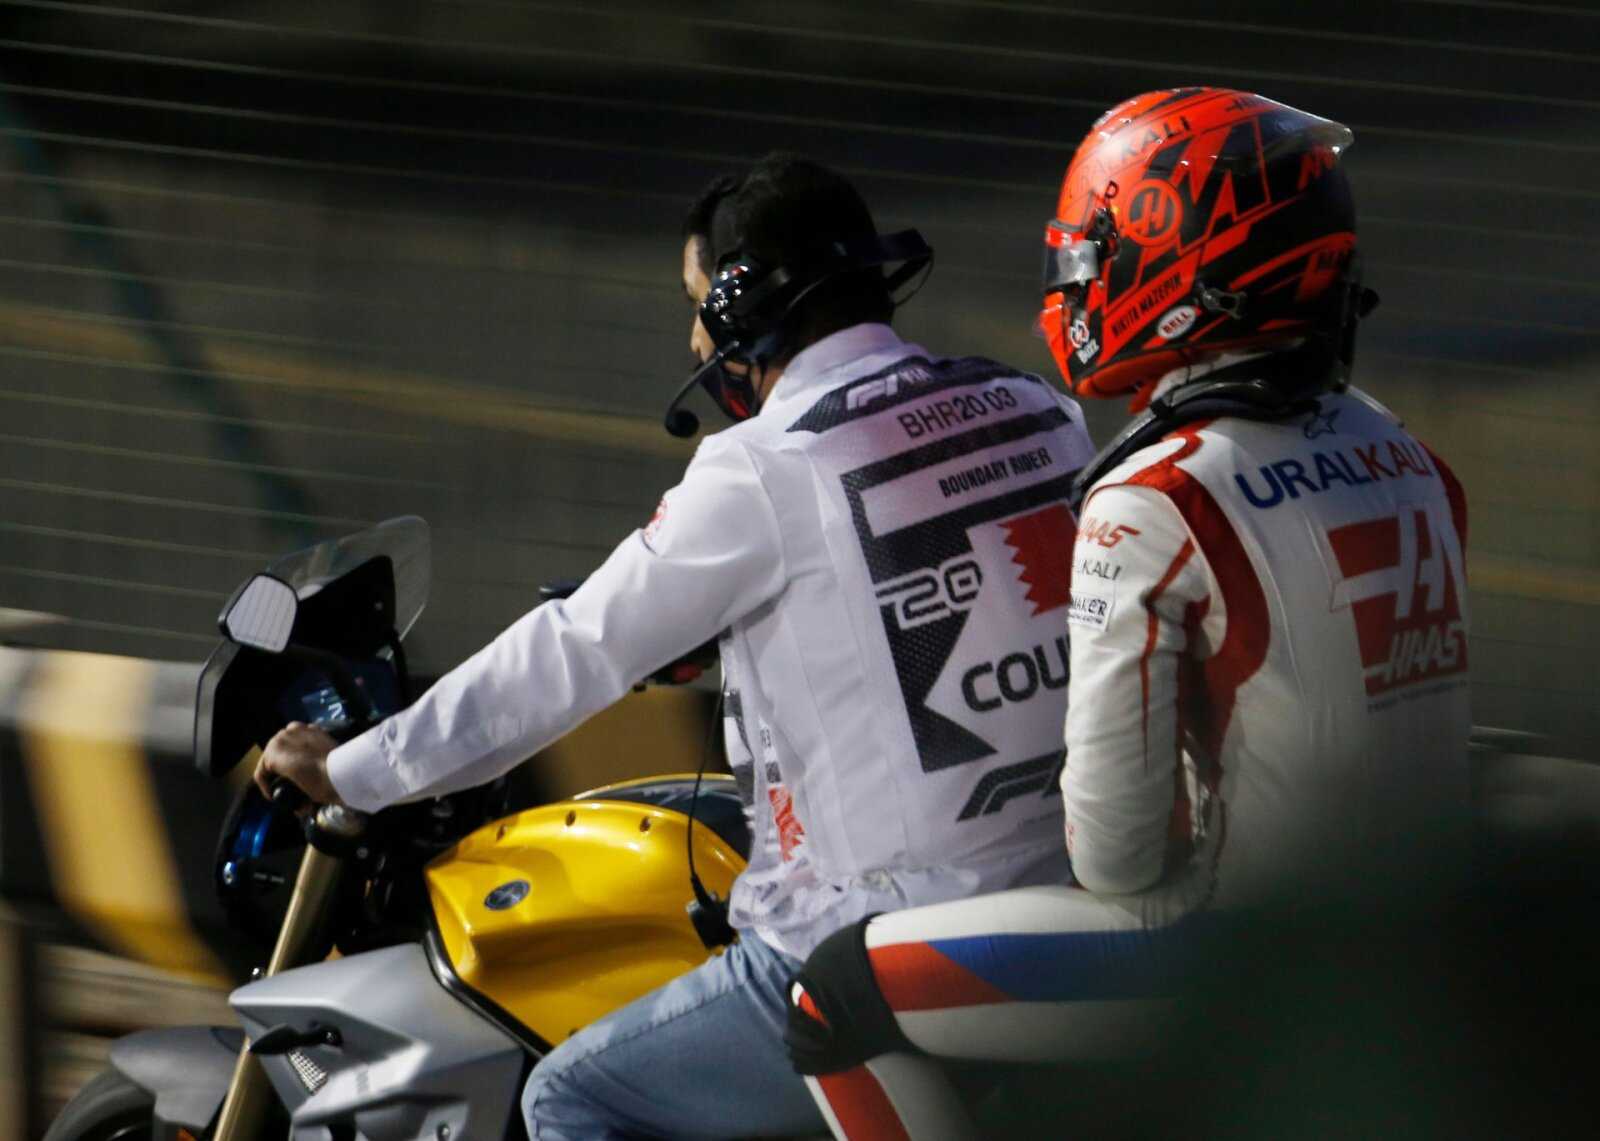 Nikita Mazepin quitte la course à Bahreïn après son accident